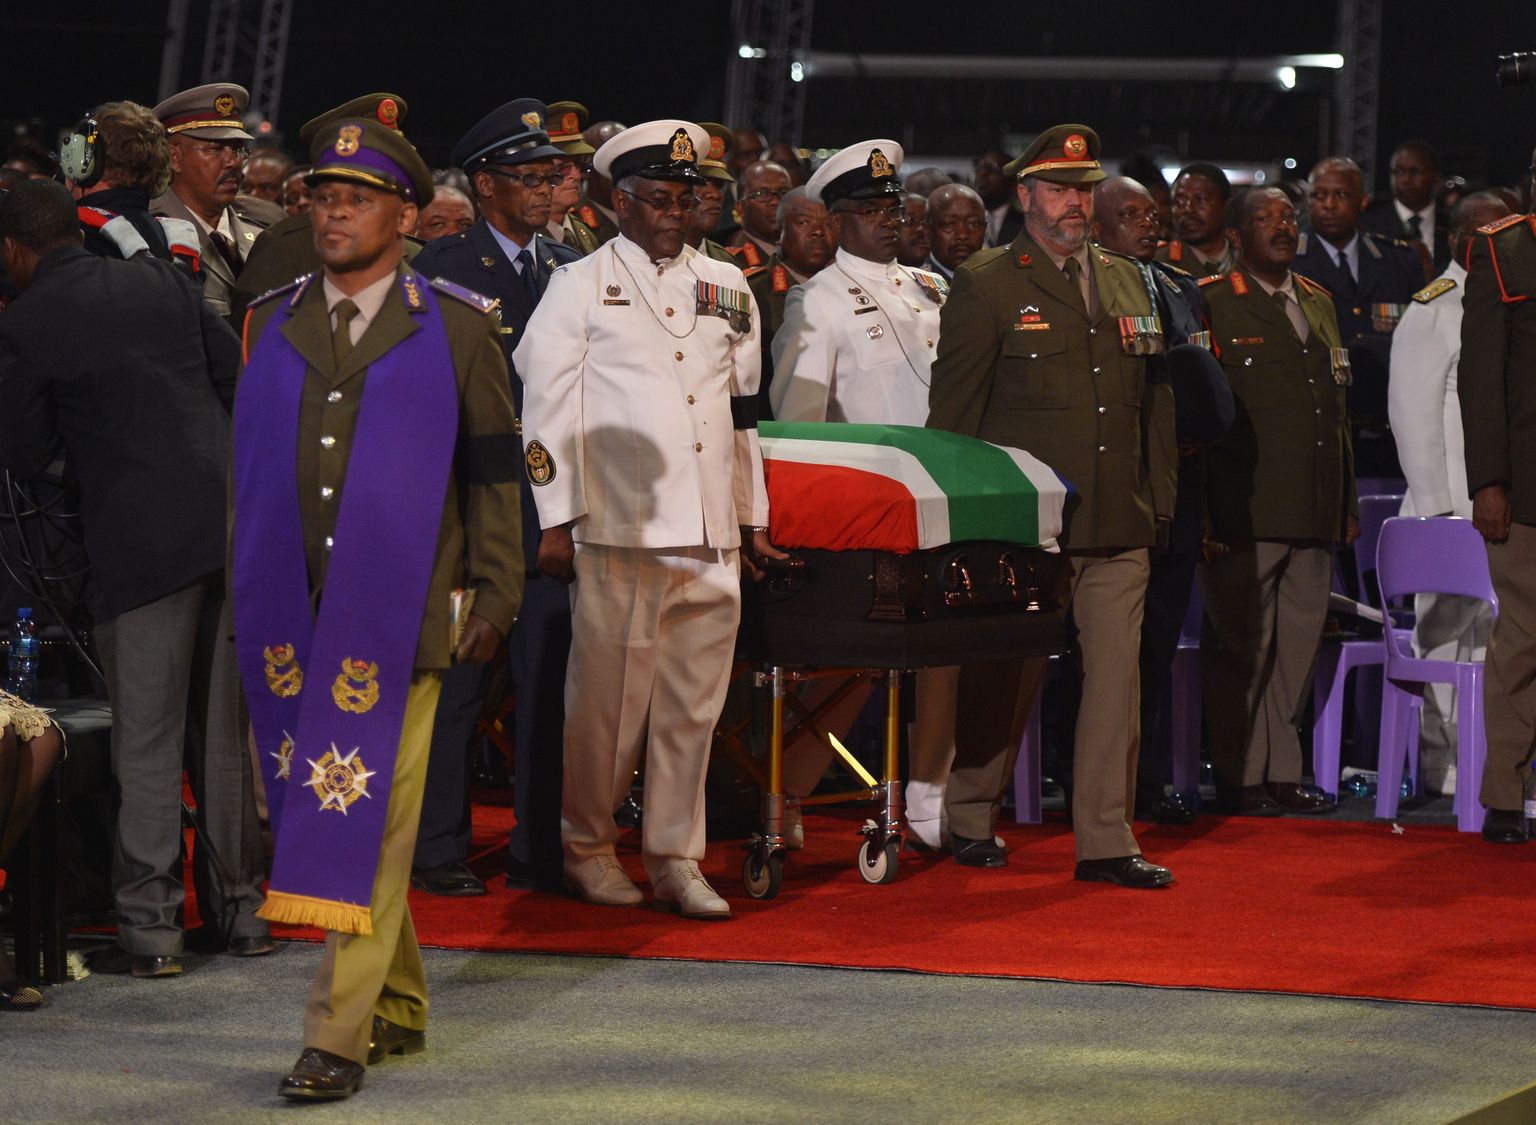 Lõuna-Aafrika vabariigi ekspresidendi Nelson Mandela sark toimetati täna Qunus matusetseremooniale.